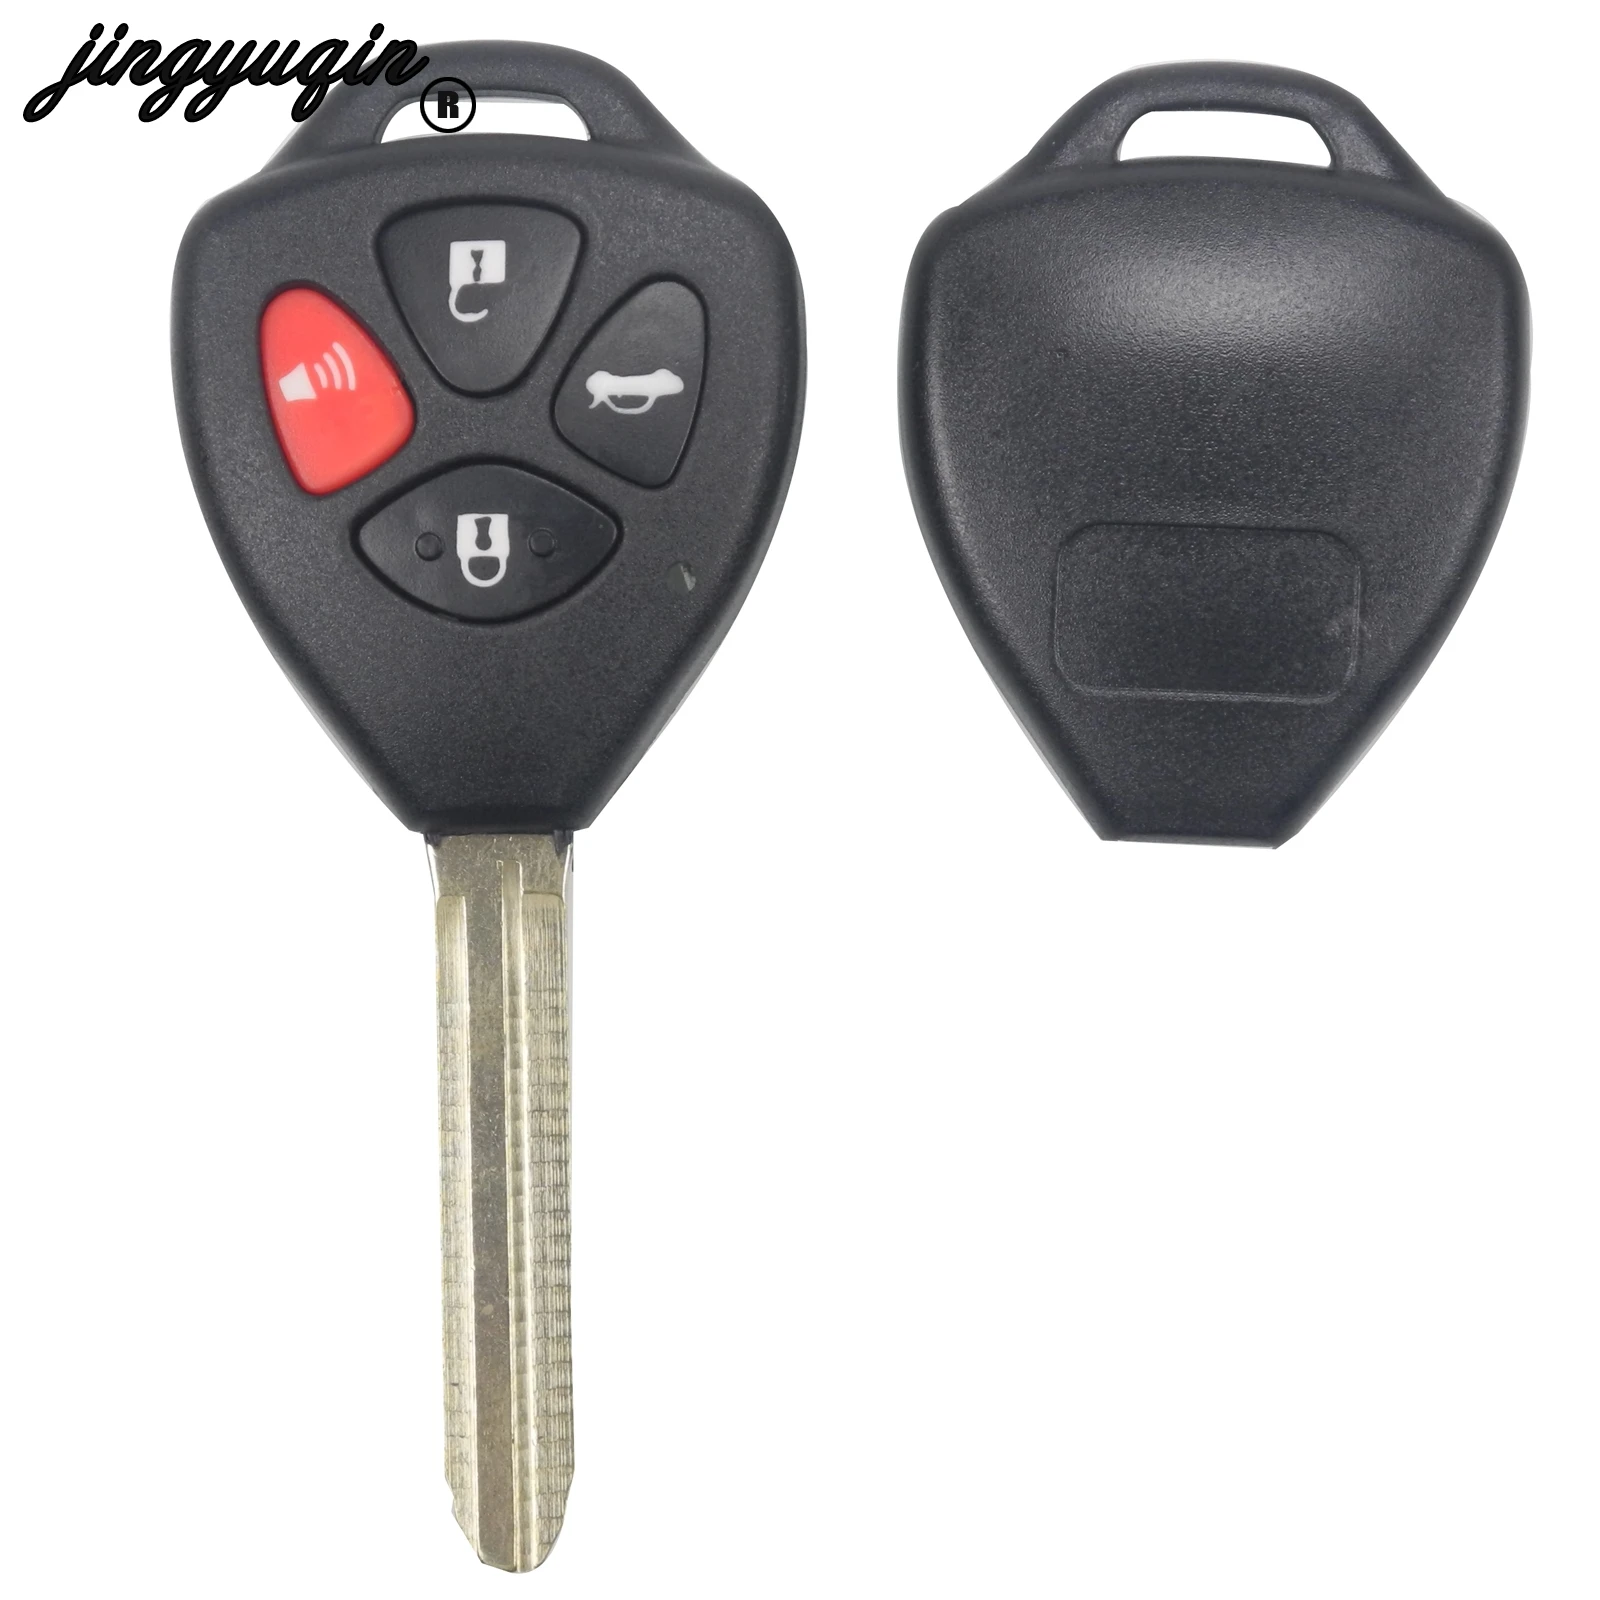 

Jingyuqin 10 шт./лот чехол для автомобильного ключа с дистанционным управлением для Toyota Camry ключ для Toyota Camry, Avalon, Corolla Matrix RAV4 Venza Yaris 4 кнопки Fob крышк...